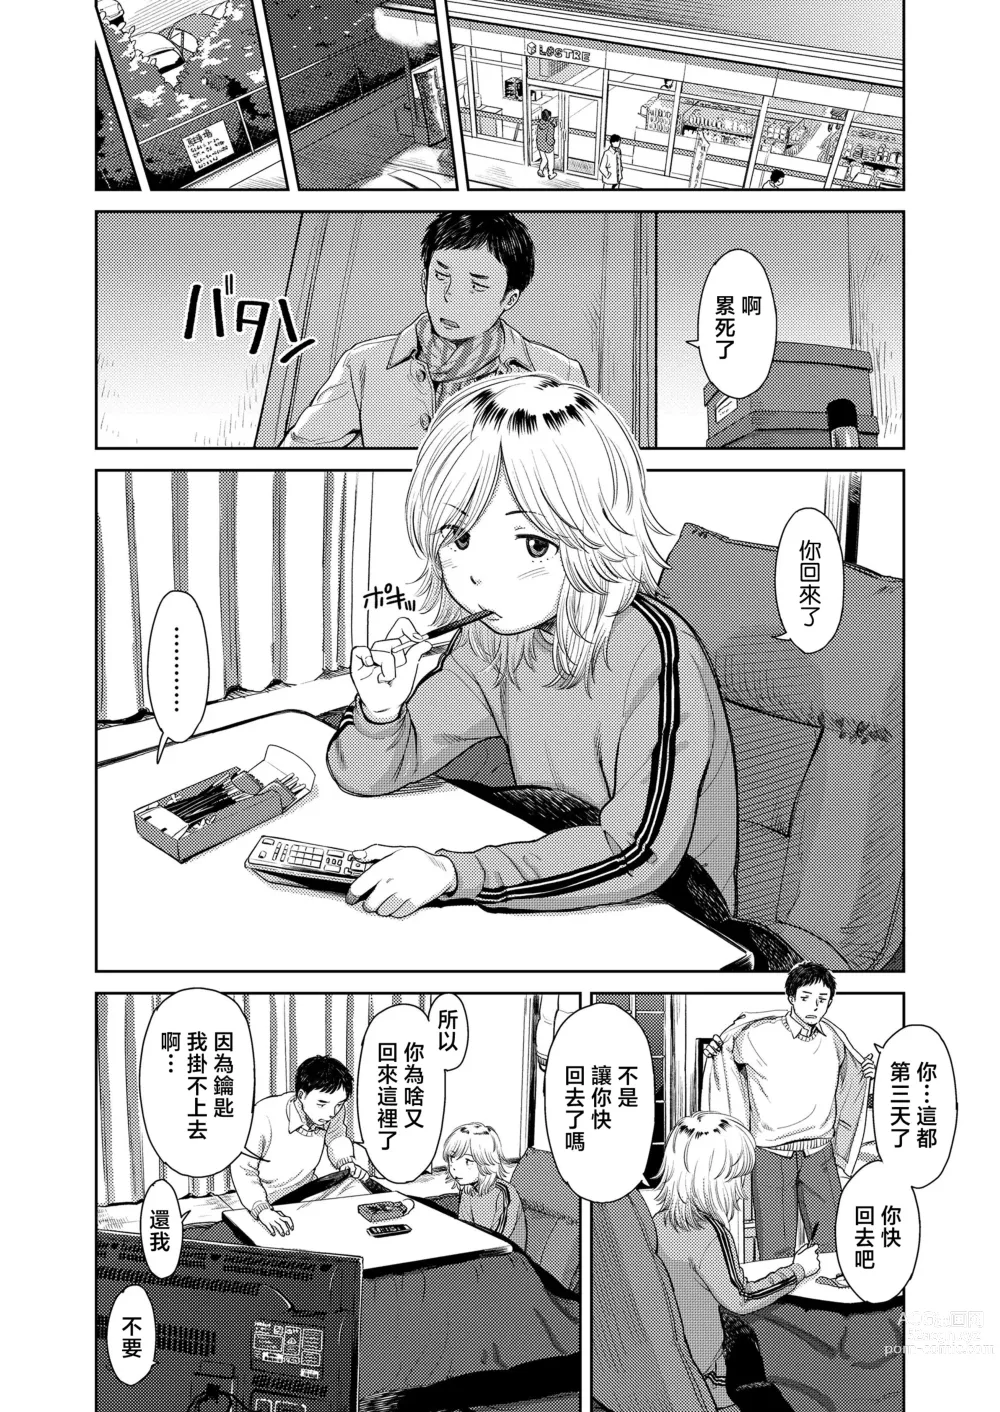 Page 6 of manga Yoru ni Houkou